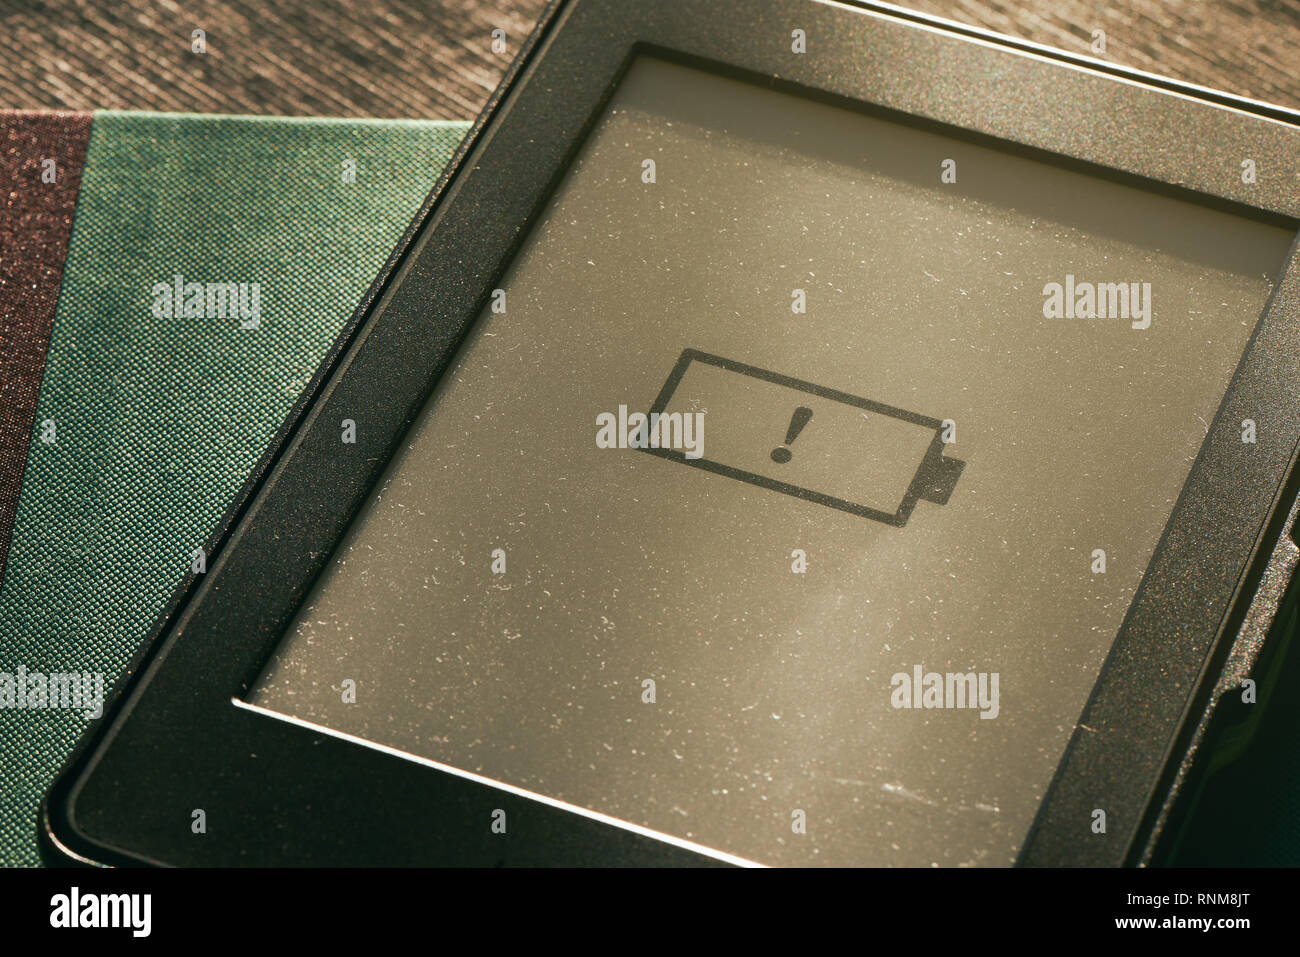 L'icône de batterie faible sur e-book e-reader avec écran soleil chaud Banque D'Images